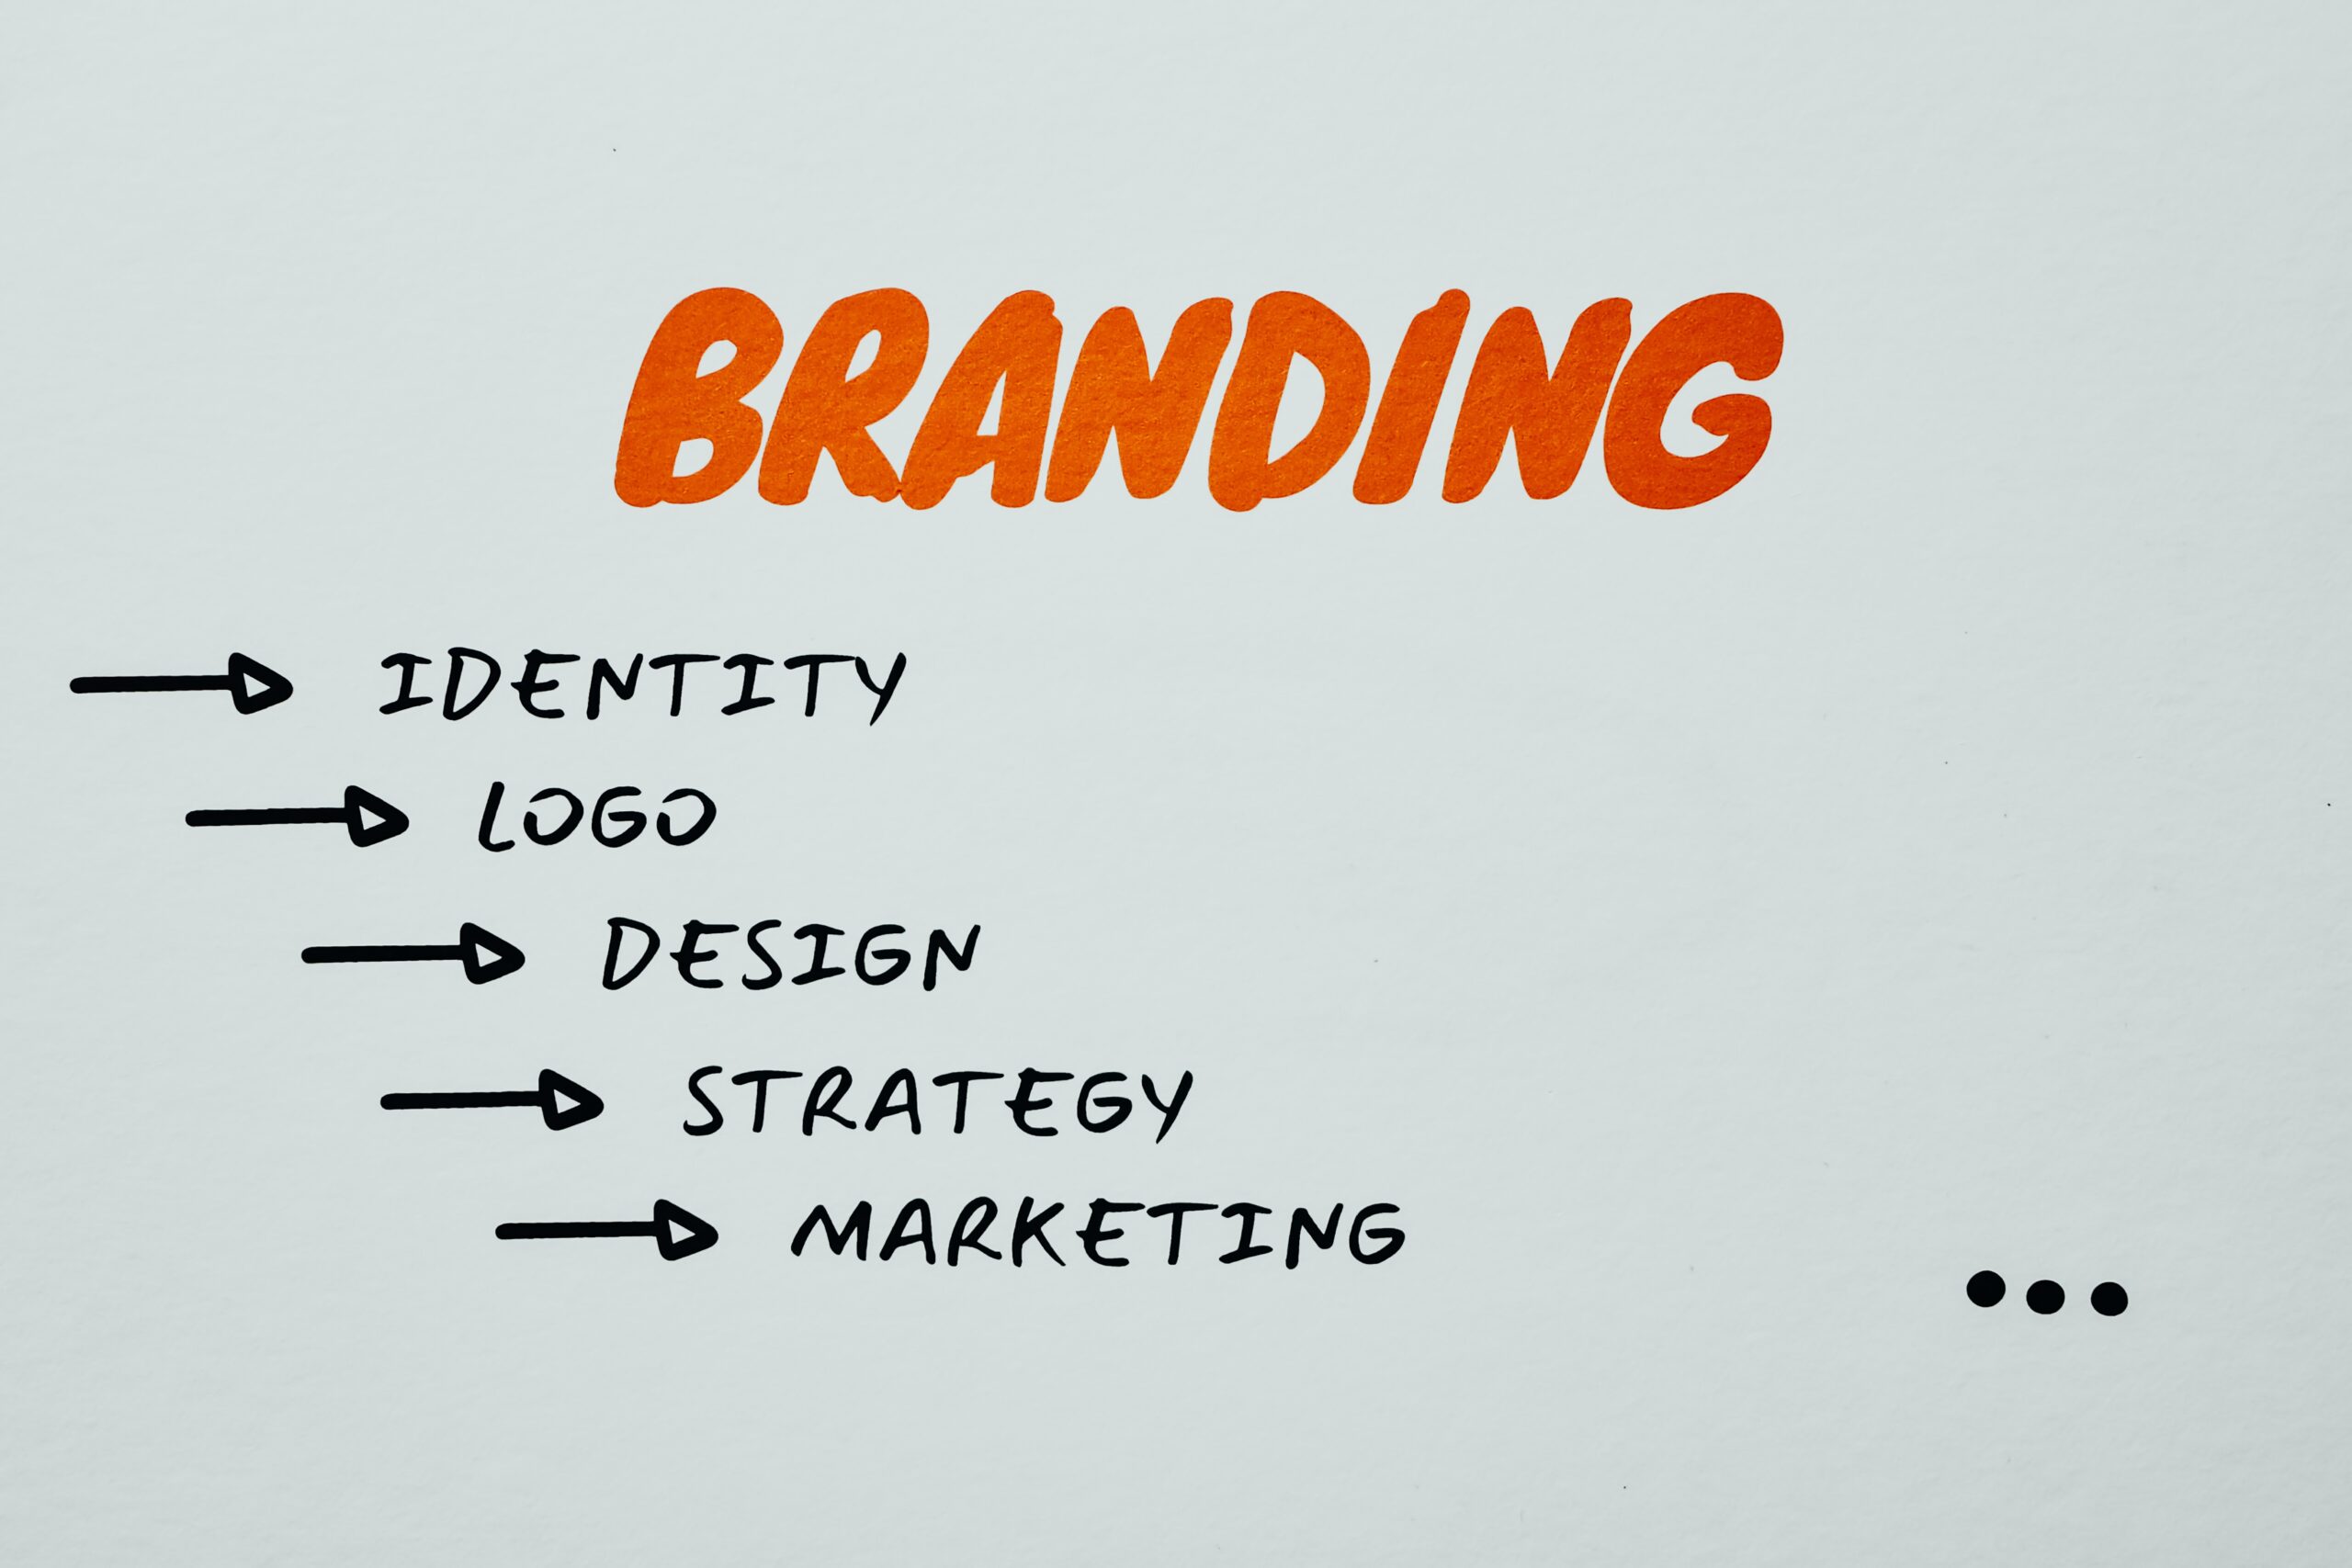 părțile componente ale unei strategii de branding